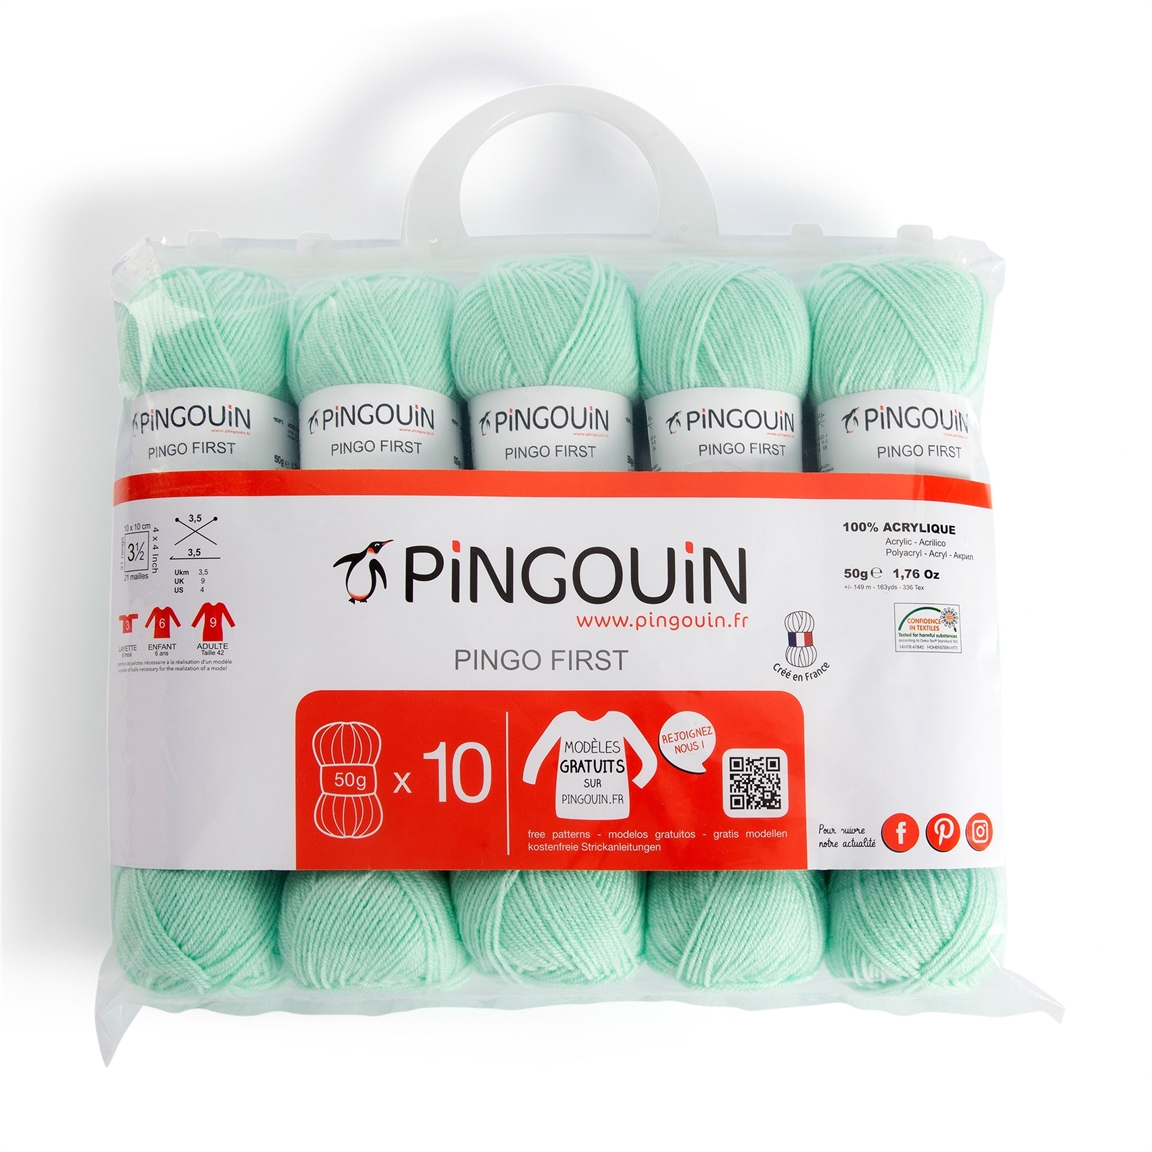 PINGO CLASSIC de Pingouin (9 coloris)